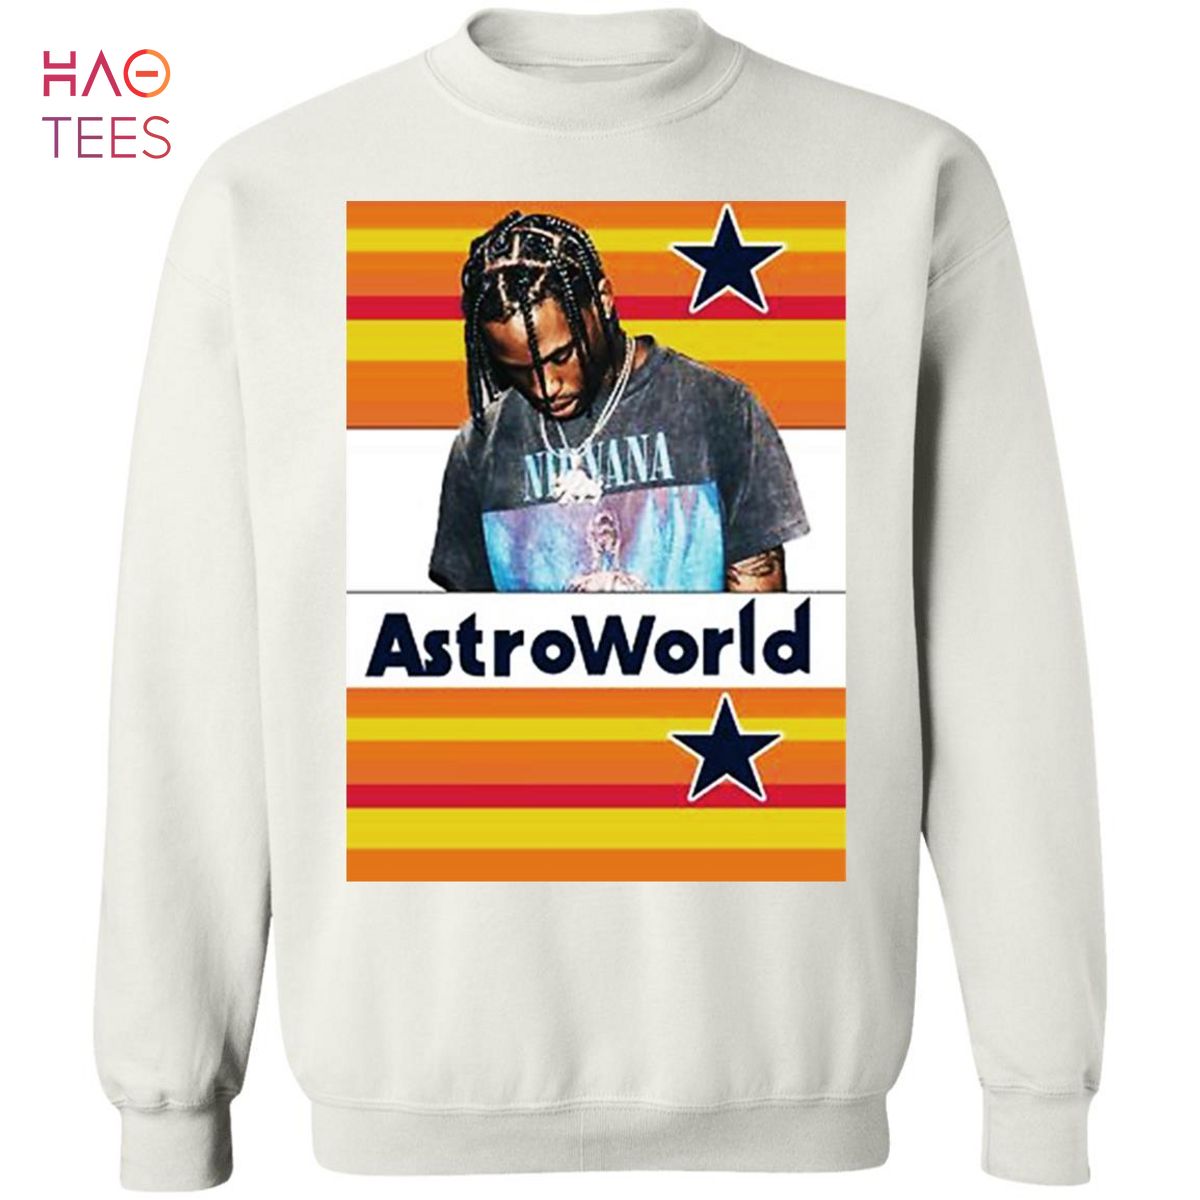 BEST Astroworld Sweater